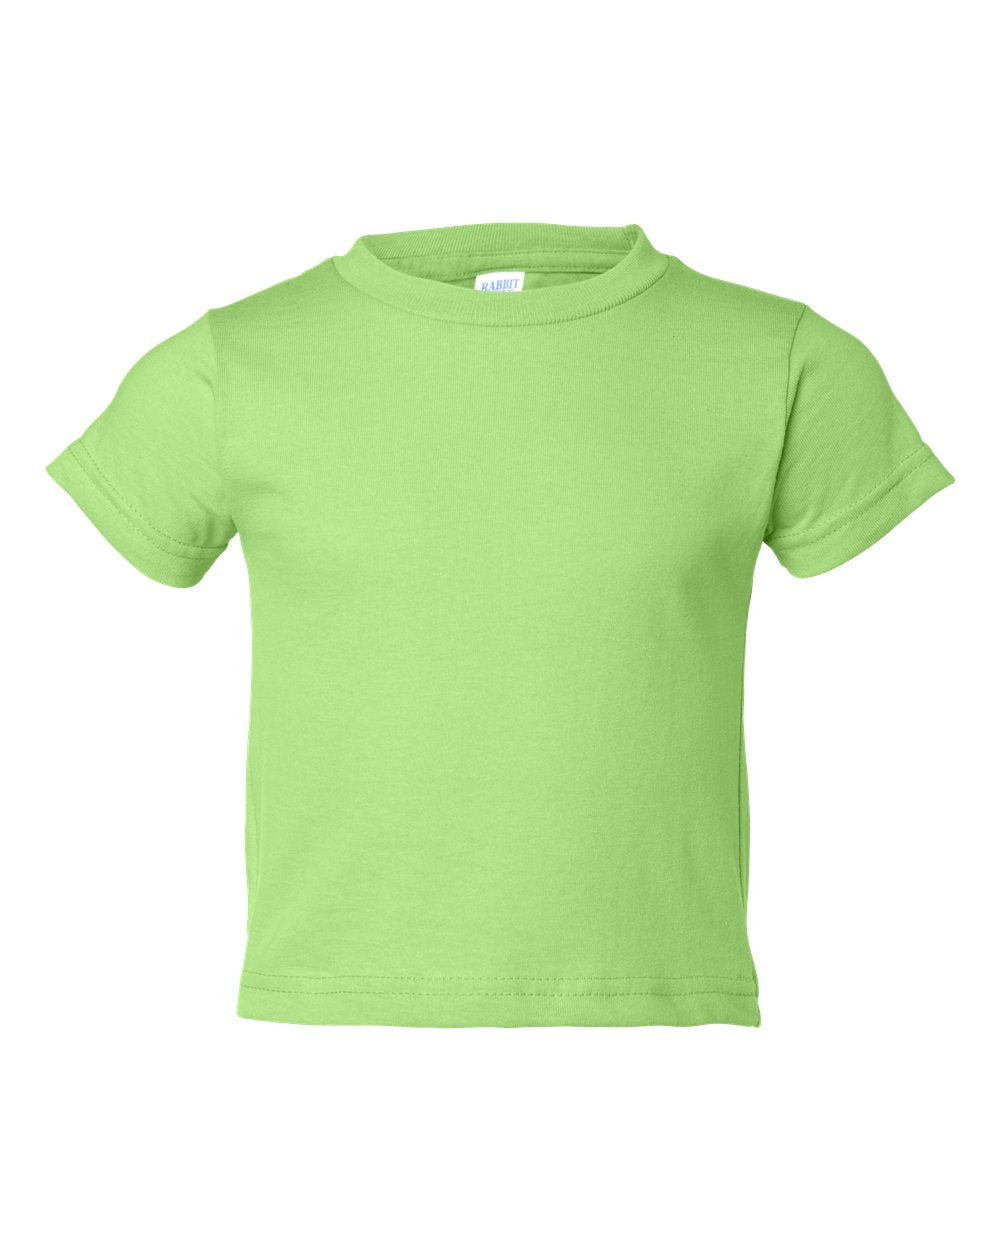 rabbit skins toddler cotton jersey tee key lime green